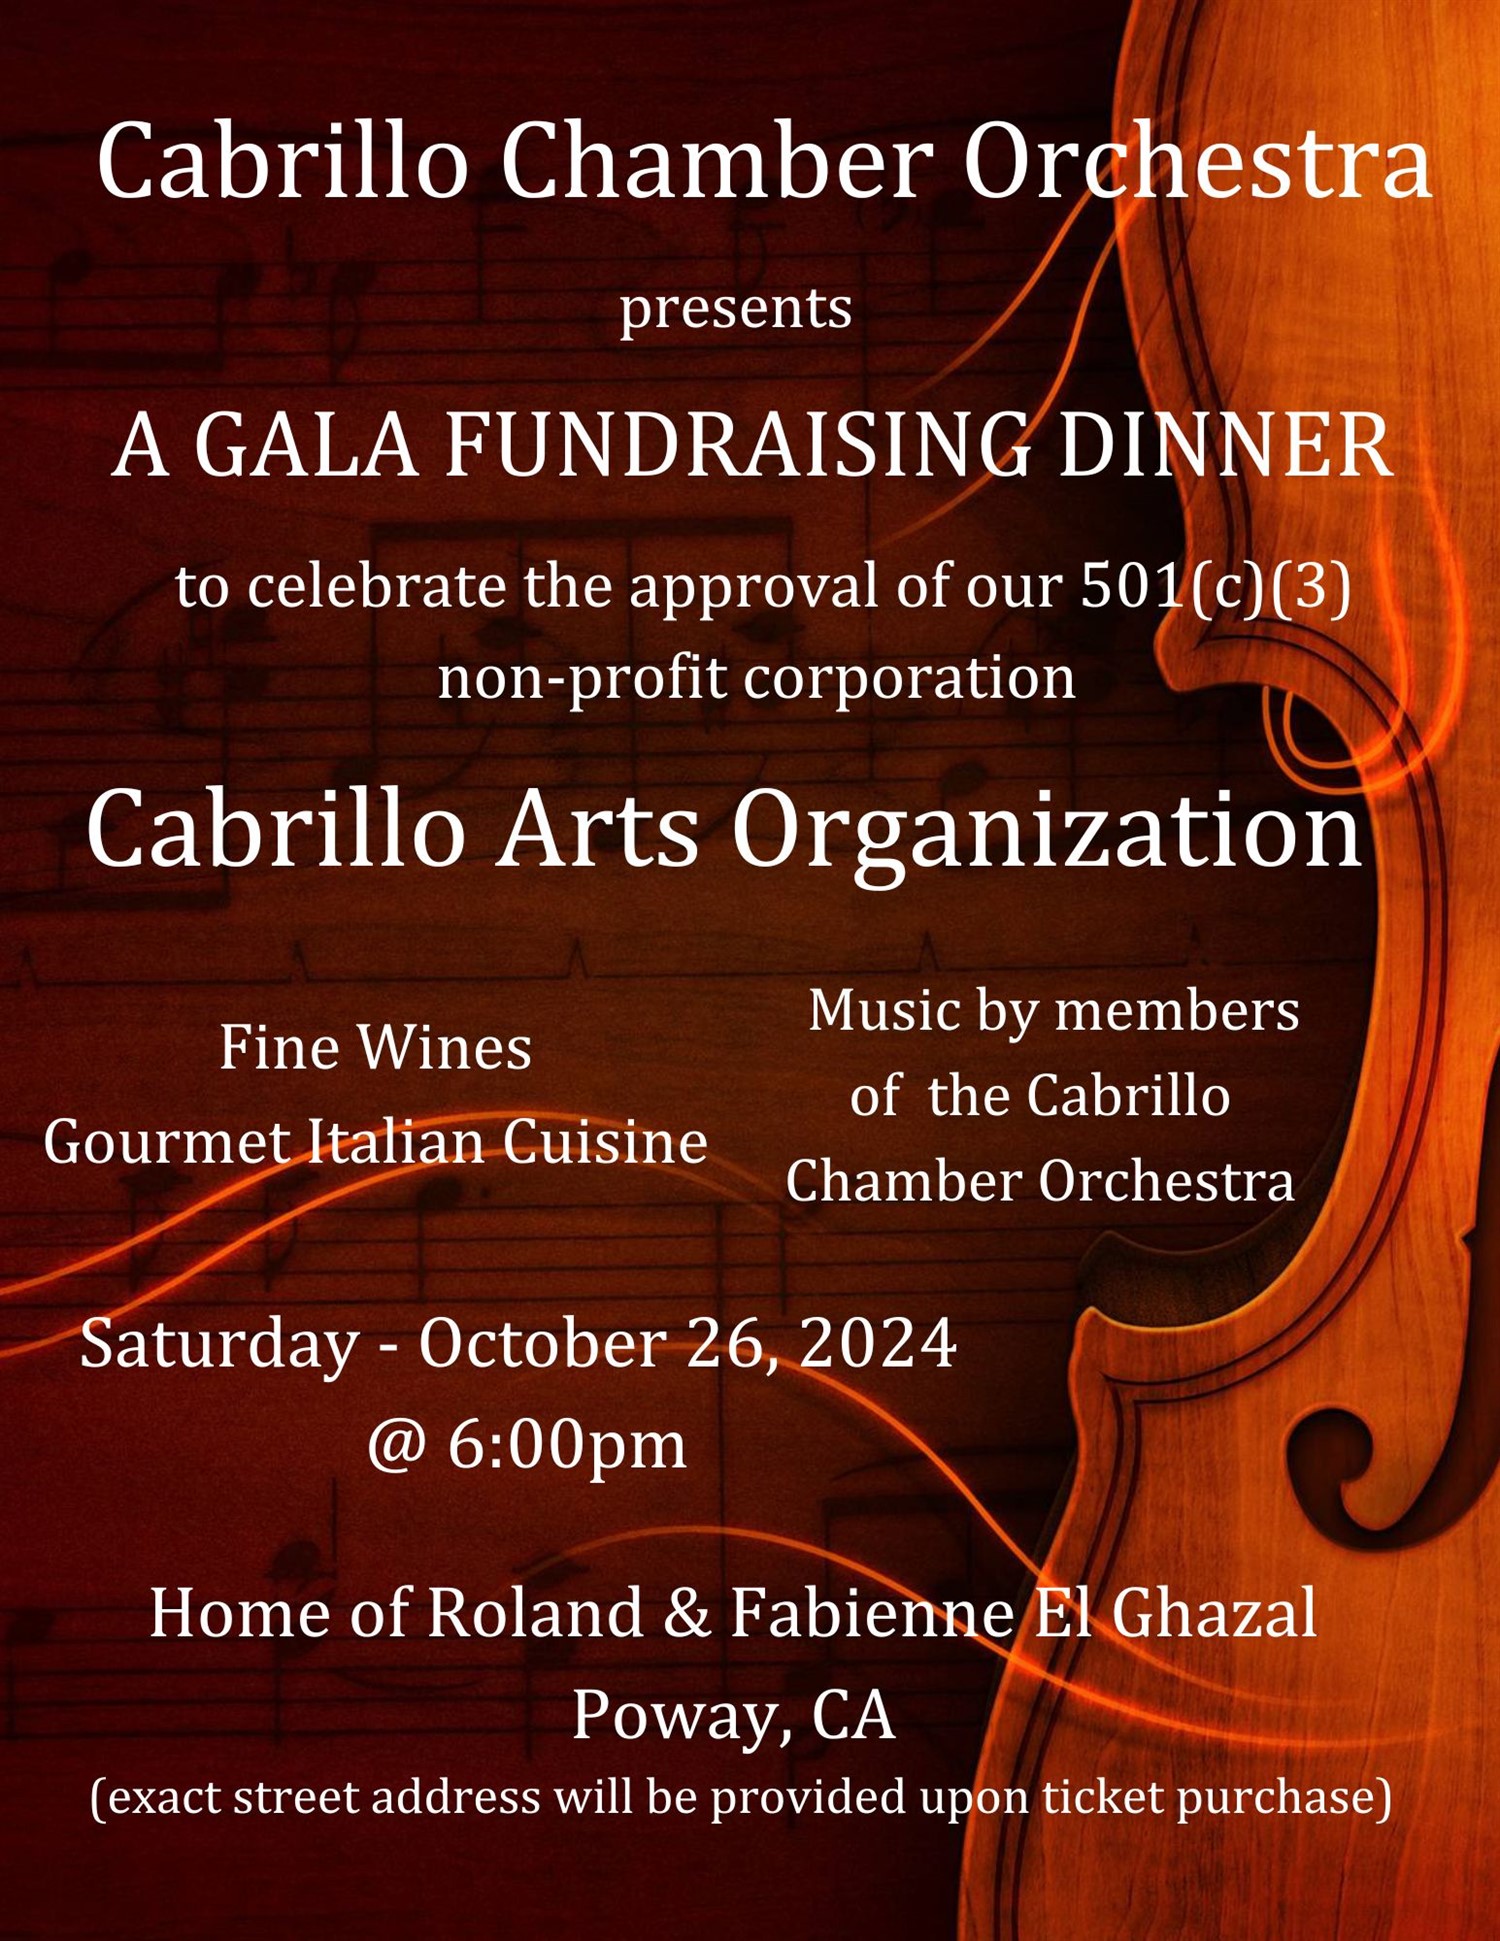 Cabrillo Arts Organization - Fundraiser Dinner  on oct. 26, 18:00@Home of Roland & Fabienne El Ghazal - Achetez des billets et obtenez des informations surCabrillo Chamber Orchestra 